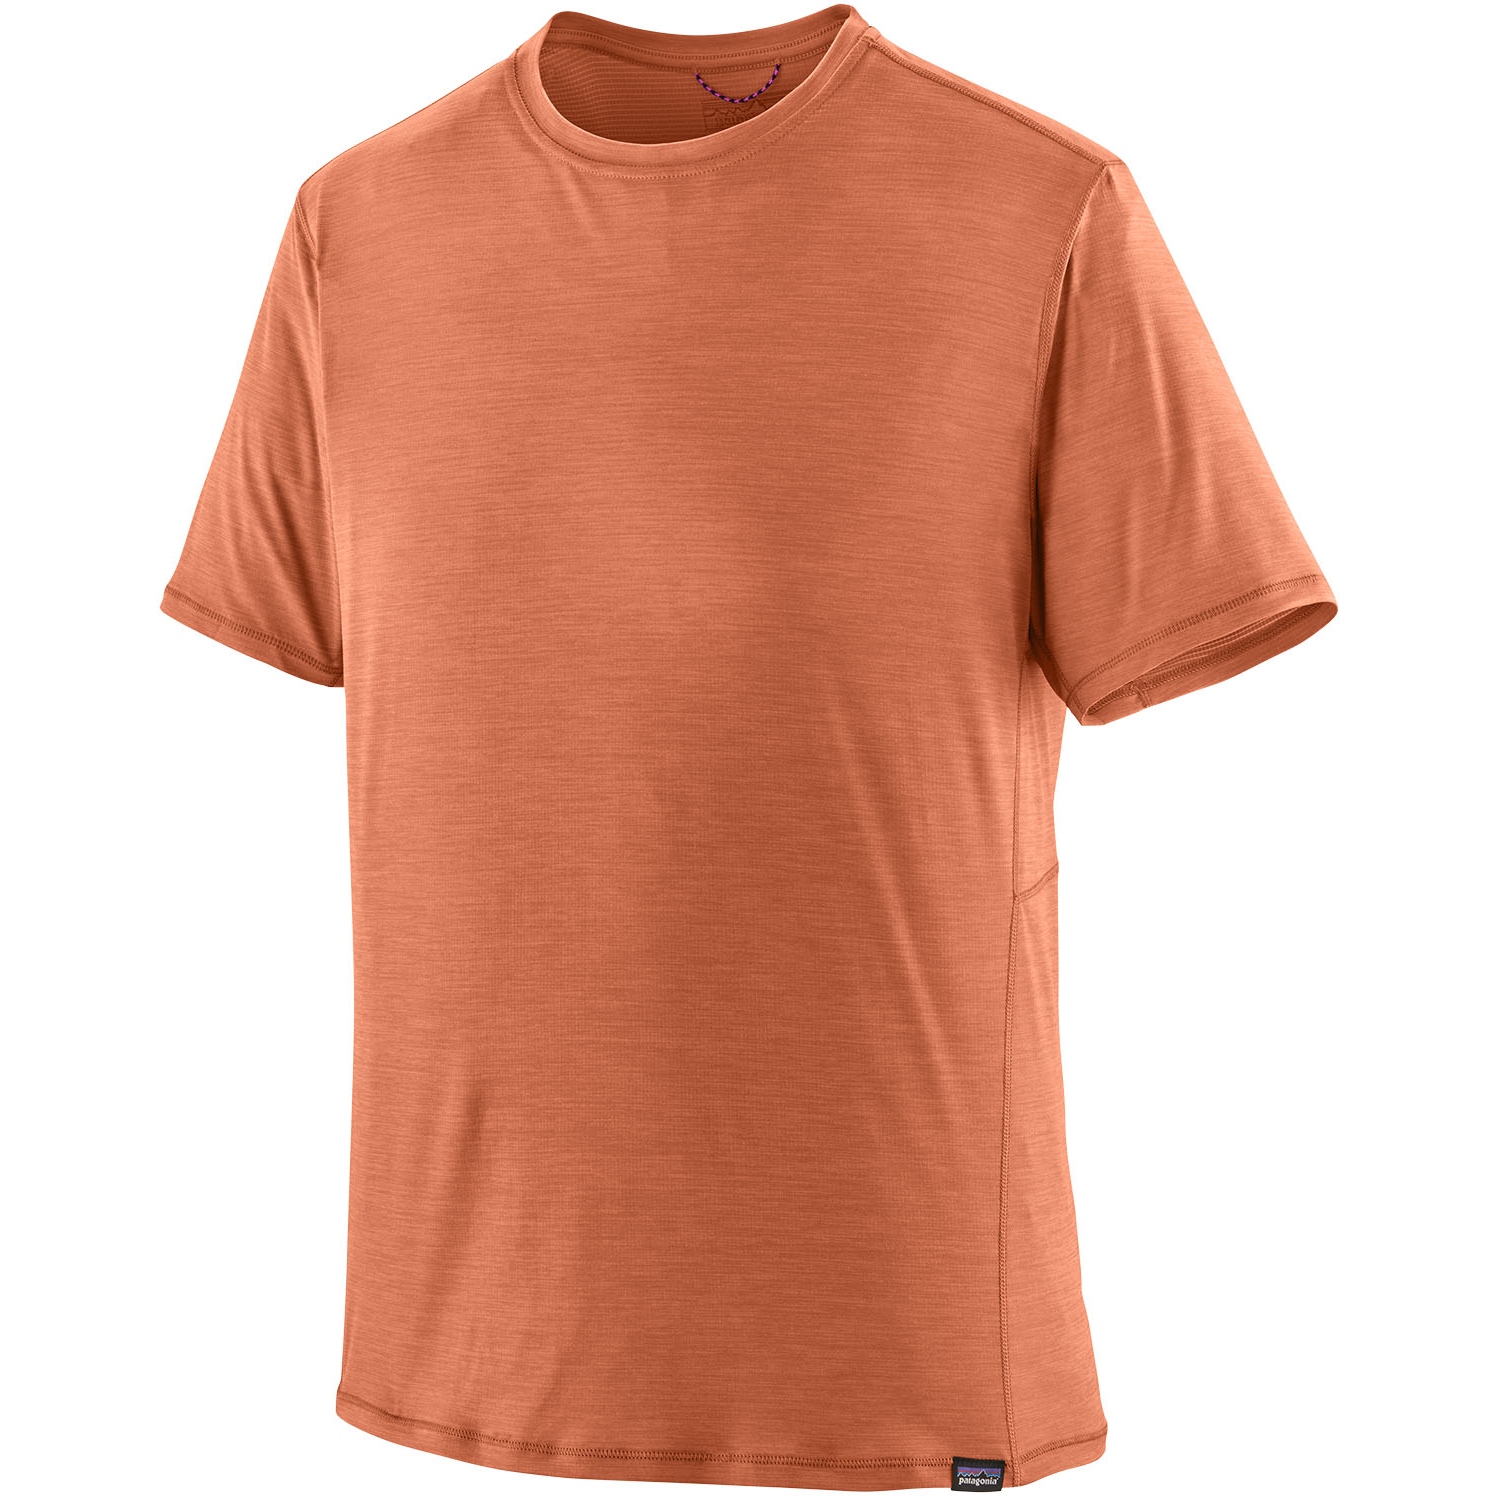 Produktbild von Patagonia Capilene Cool Lightweight T-Shirt Herren - Sienna Clay - Light Sienna Clay X-Dye